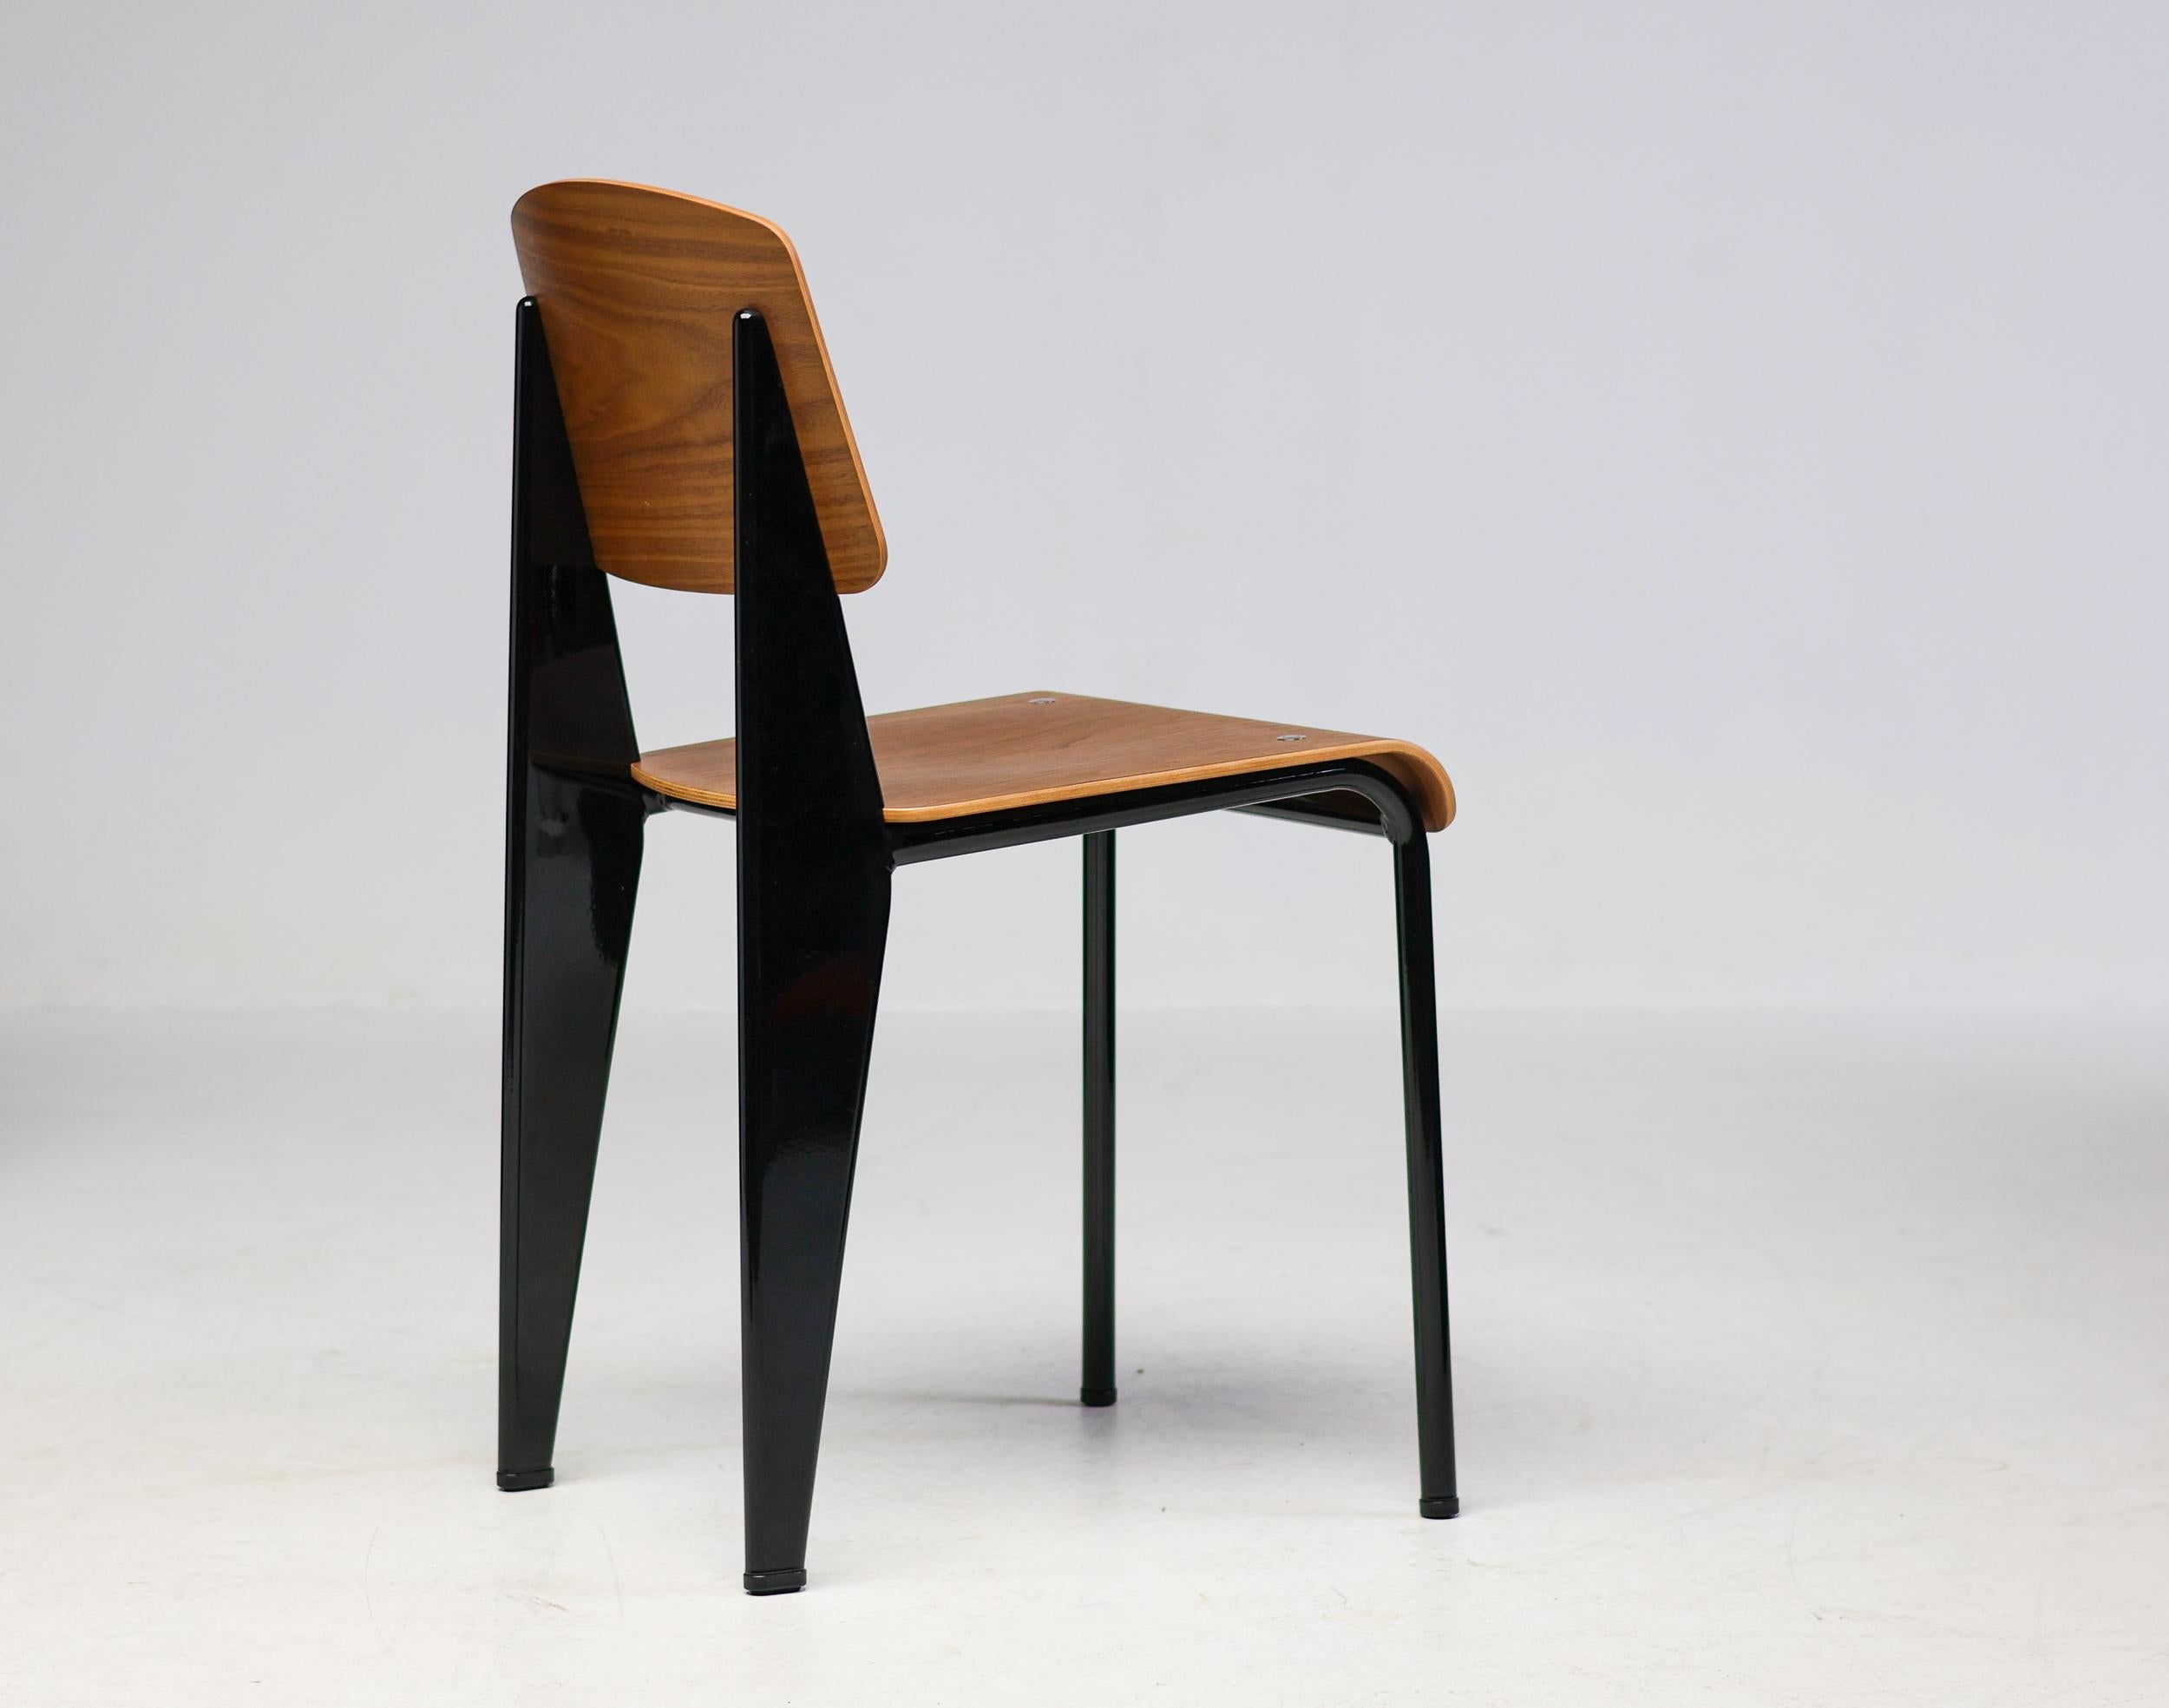 Der klassische Standardstuhl wurde ursprünglich 1934 von Jean Prouvé entworfen.
Dieses schöne Exemplar ist aus Nussbaumholz gefertigt und hat einen schwarz emaillierten Stahlrahmen.
Markiert mit Label.

Jean Prouvé war ein französischer